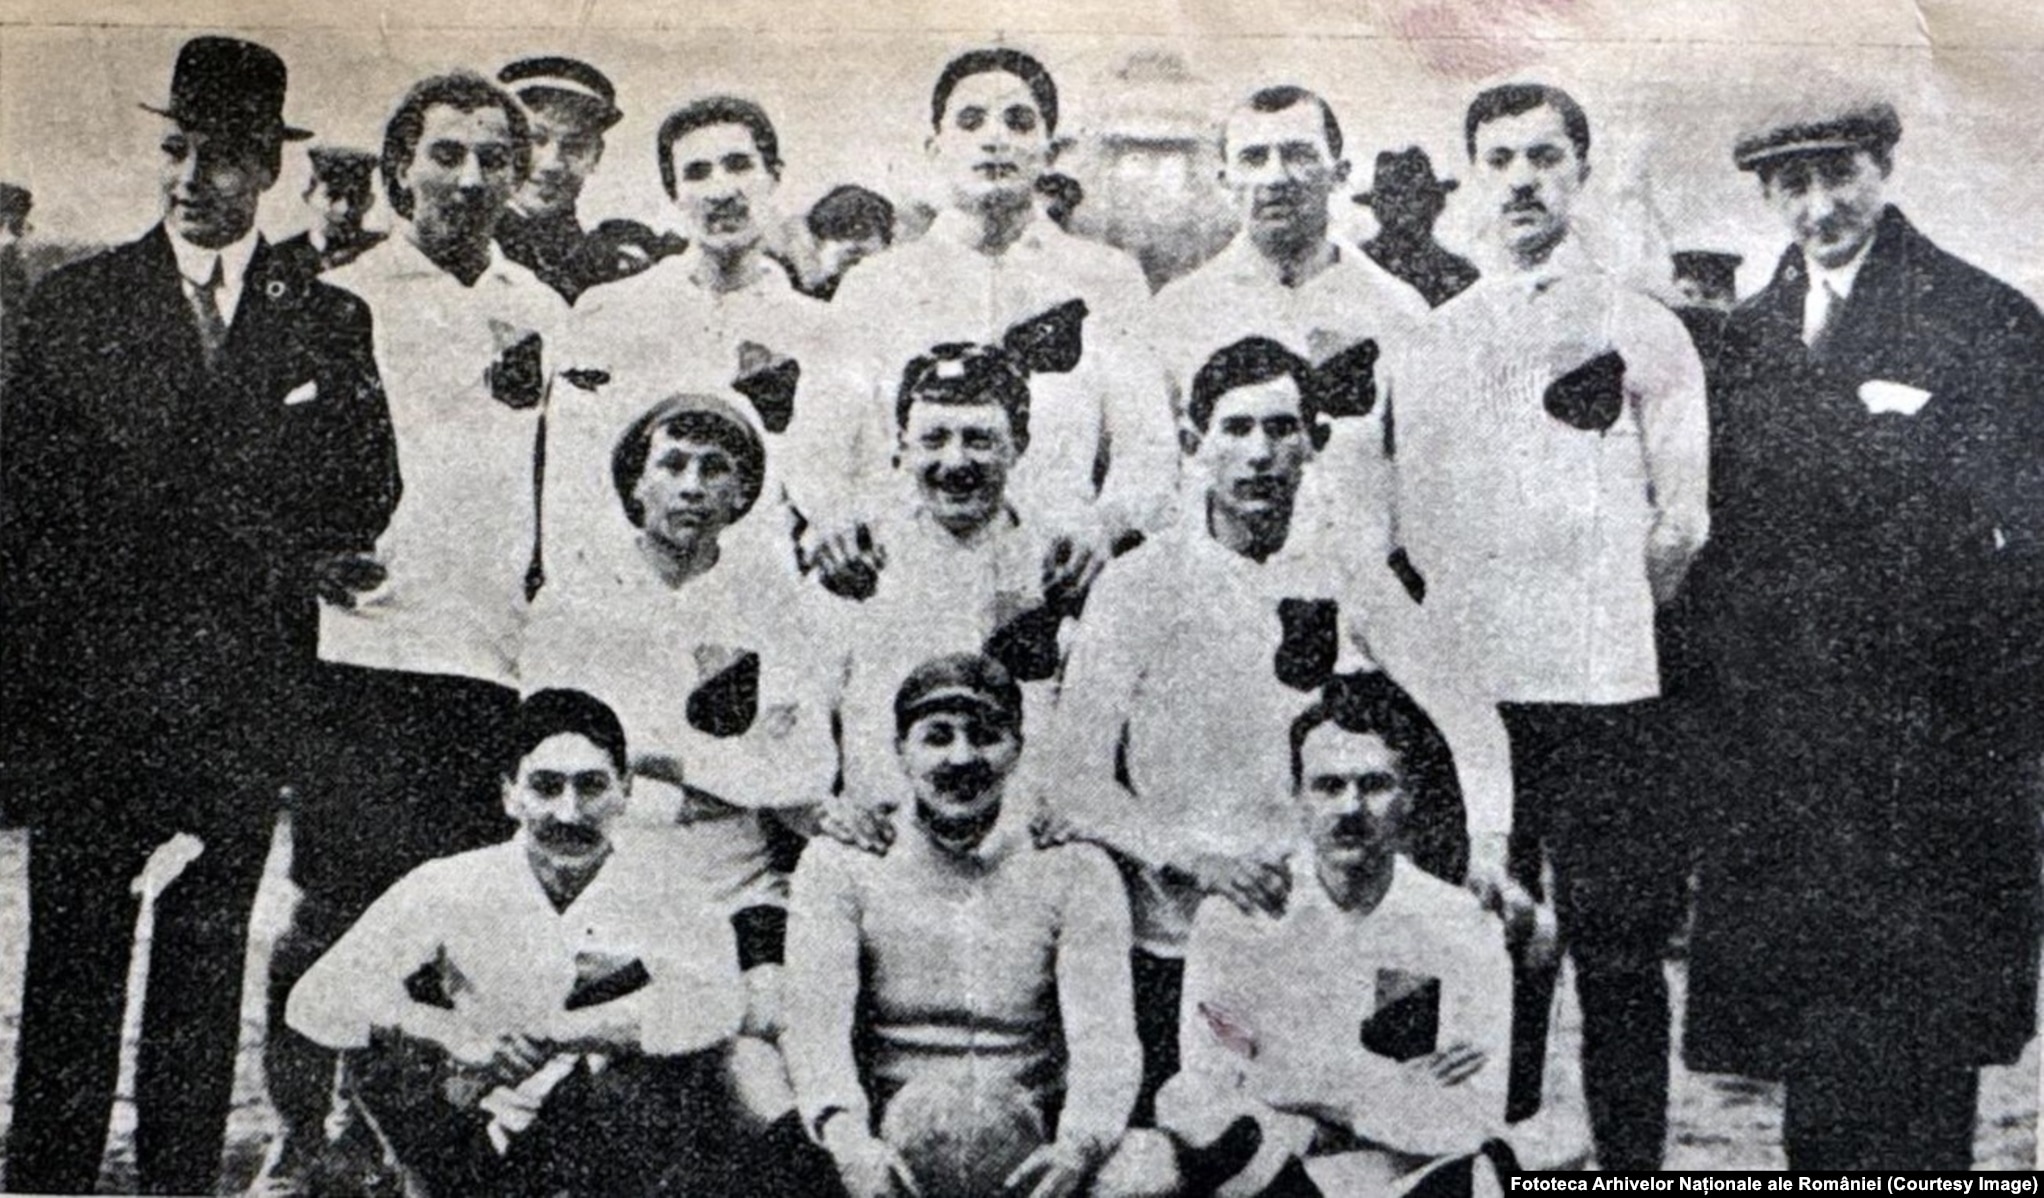 Prima echipă românească de fotbal, Olympia, în 1909. Pe rândul din stânga jos este Mario Gebauer, cel care a adus prima minge de fotbal din România și avea să fie primul președinte al Federației de Fotbal.